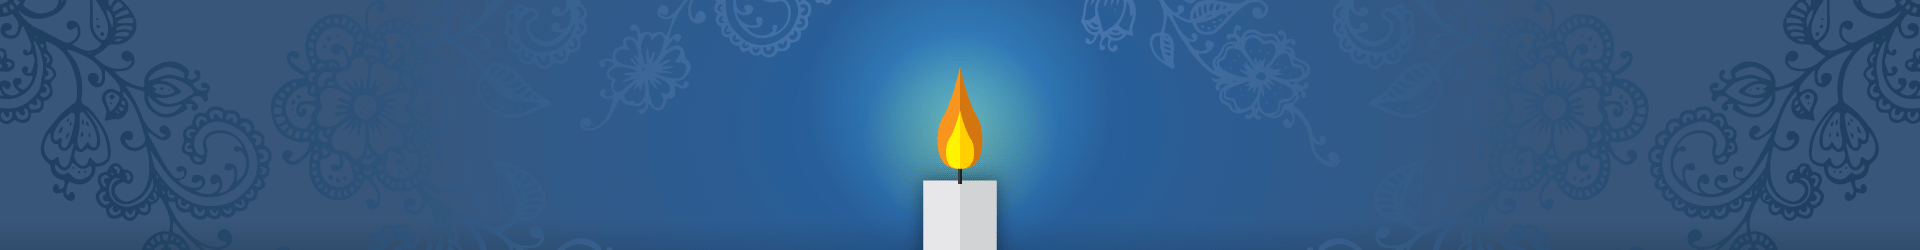 Memorium - Hero:Candle